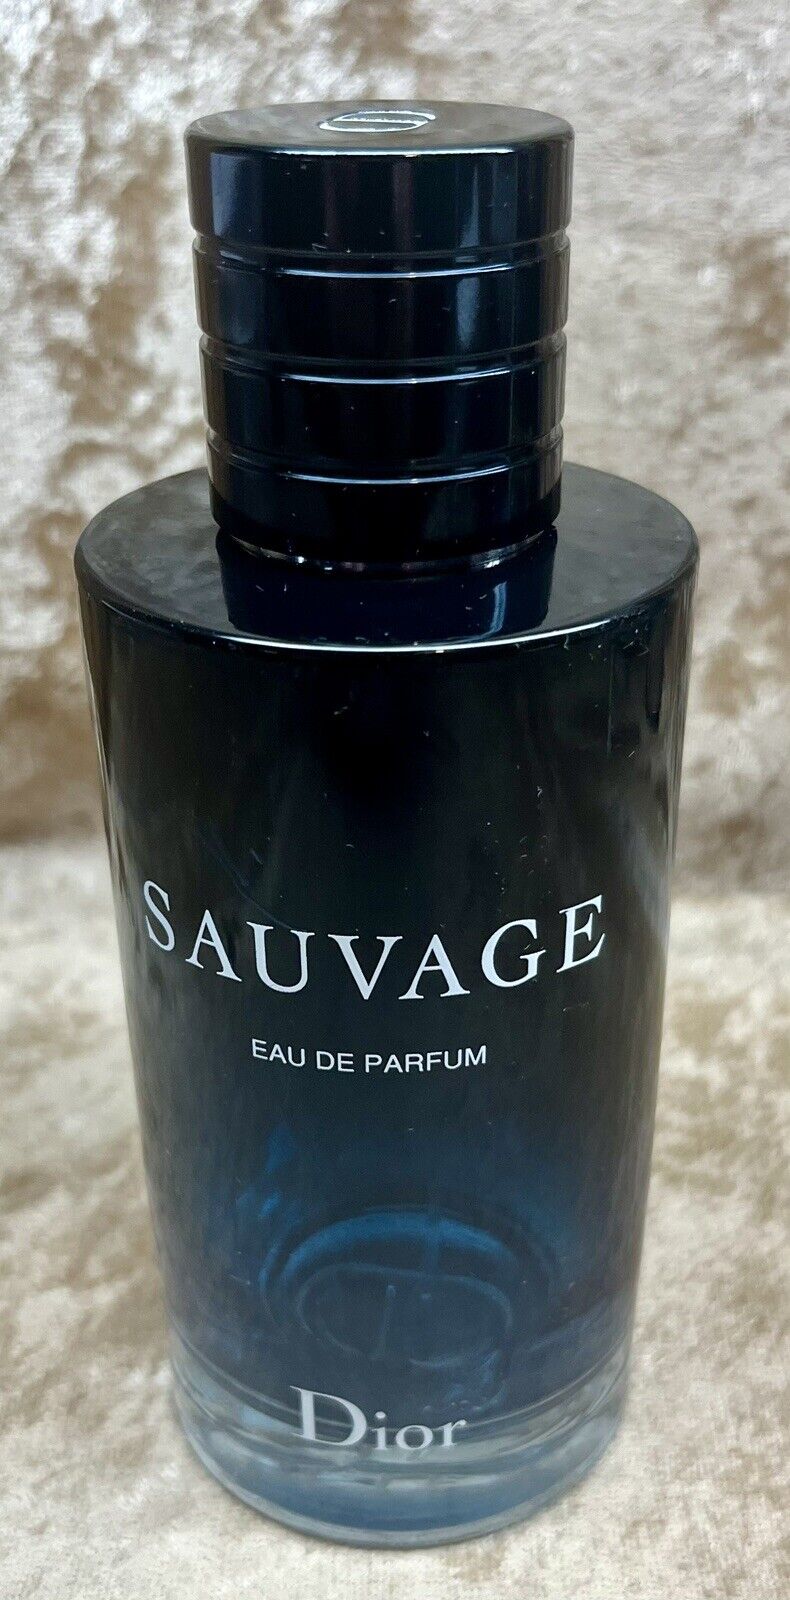 Sauvage Dior Eau De Parfum Empty No Perfume  Bottle 6.7 Fl. Oz. 200 Ml.